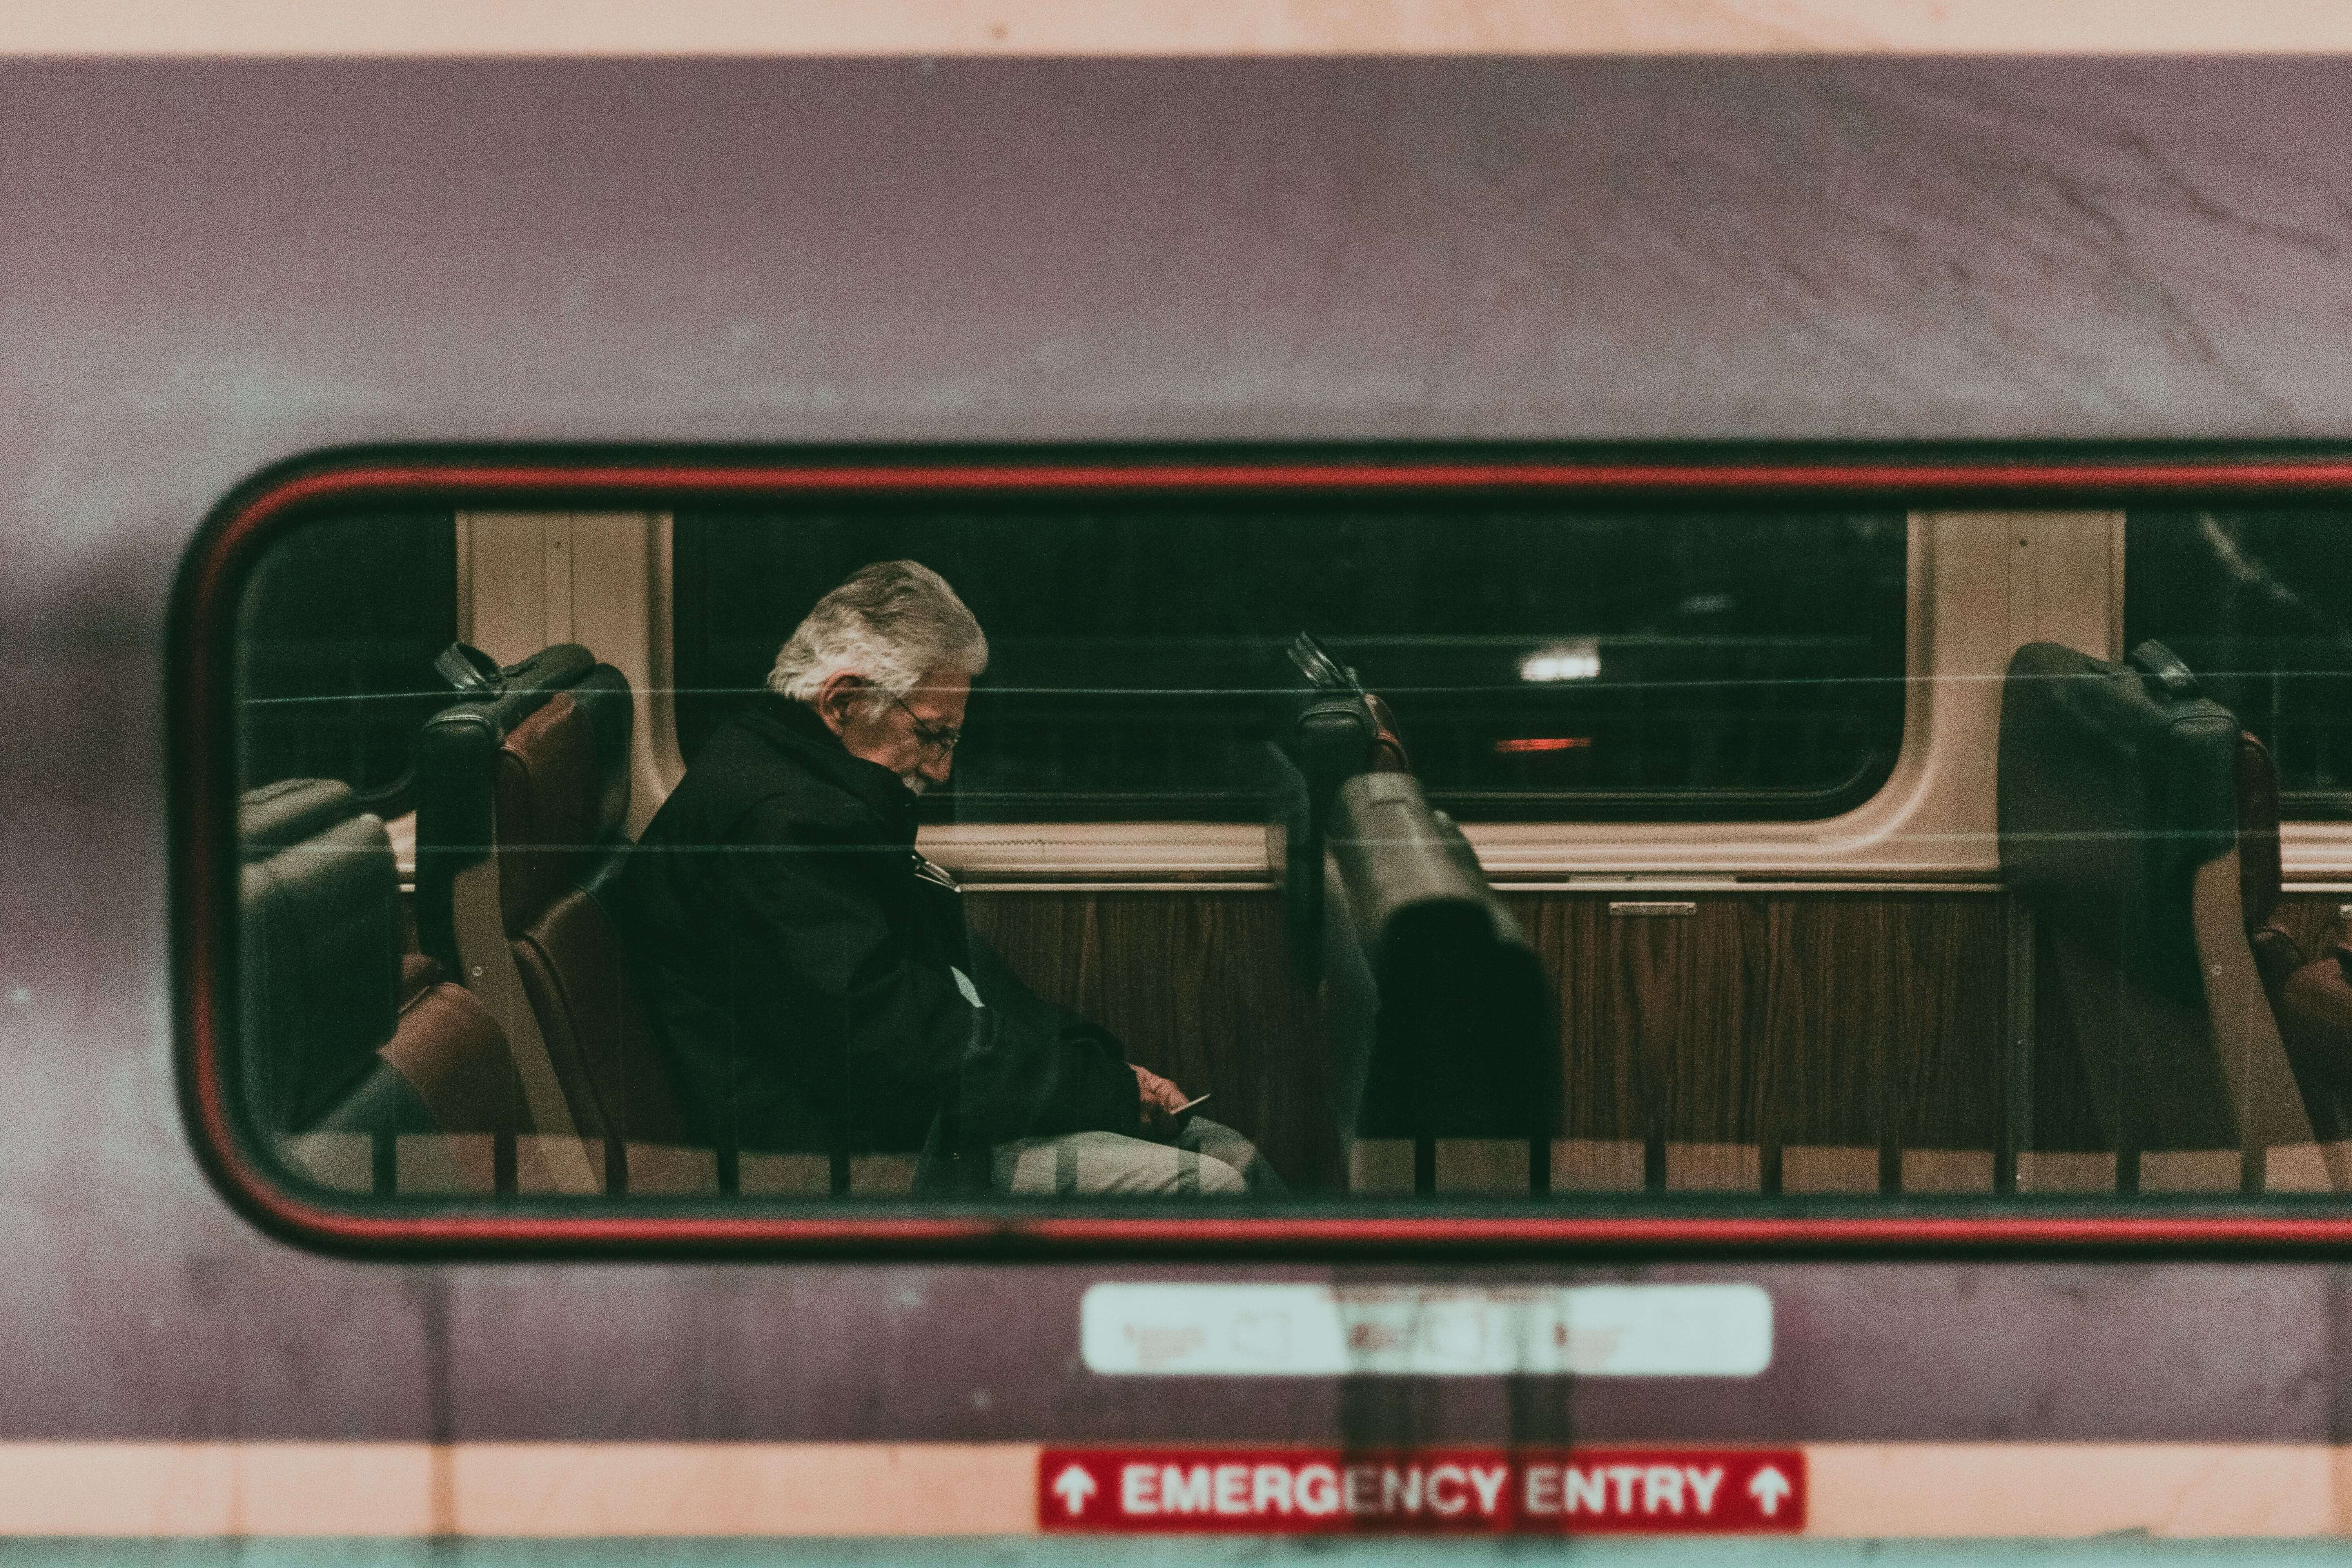 a man with obstructive sleep apnea on a train